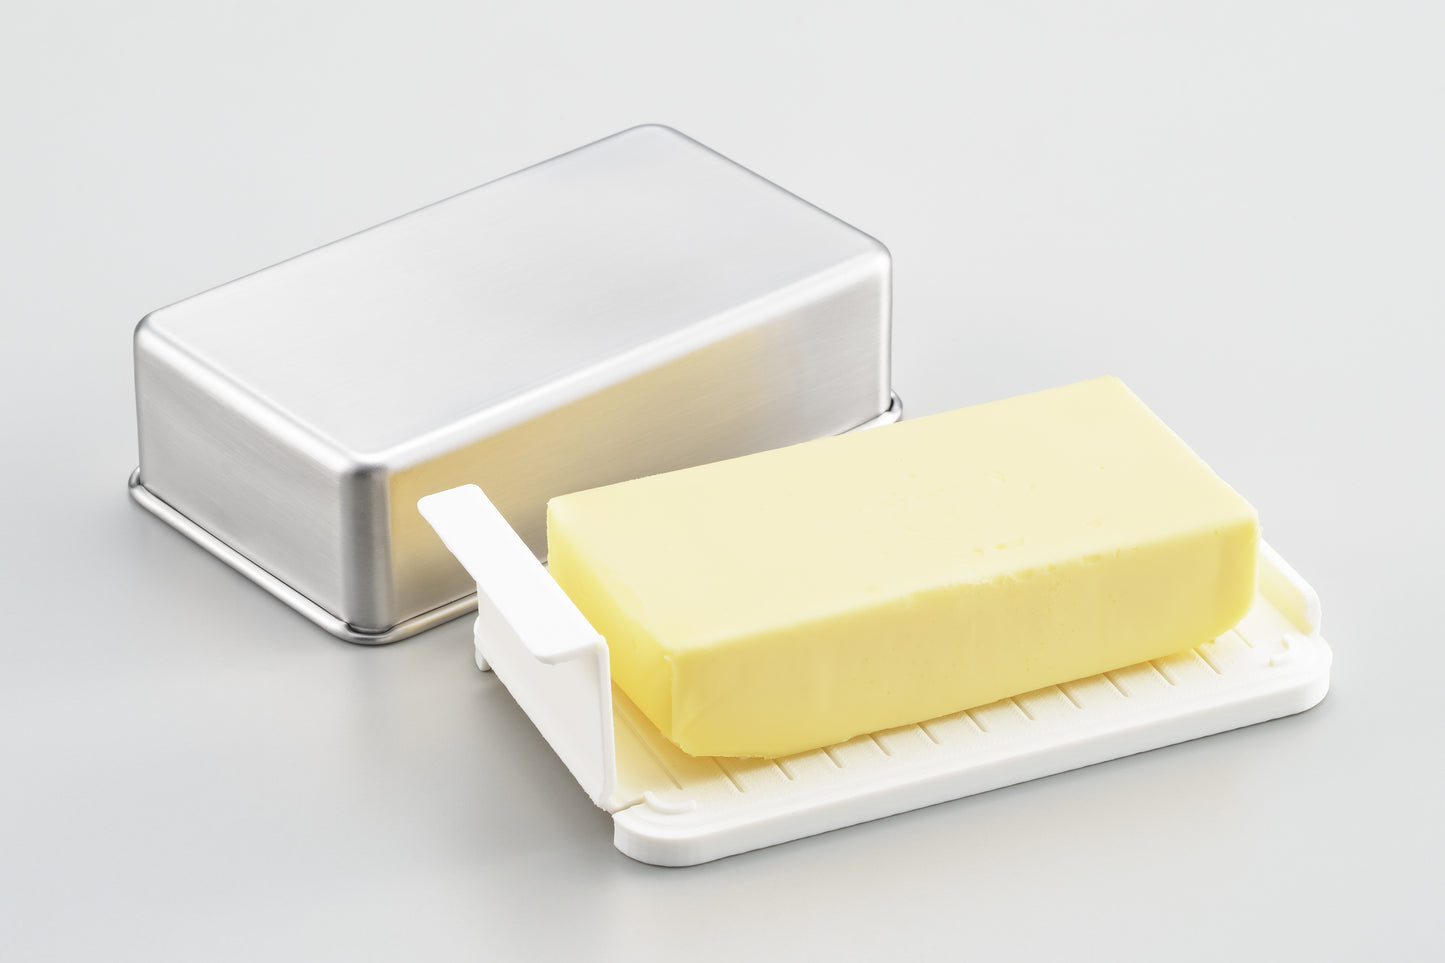 ヨシカワ EAﾄCO(イイトコ)シリーズ Butter Case バターケース